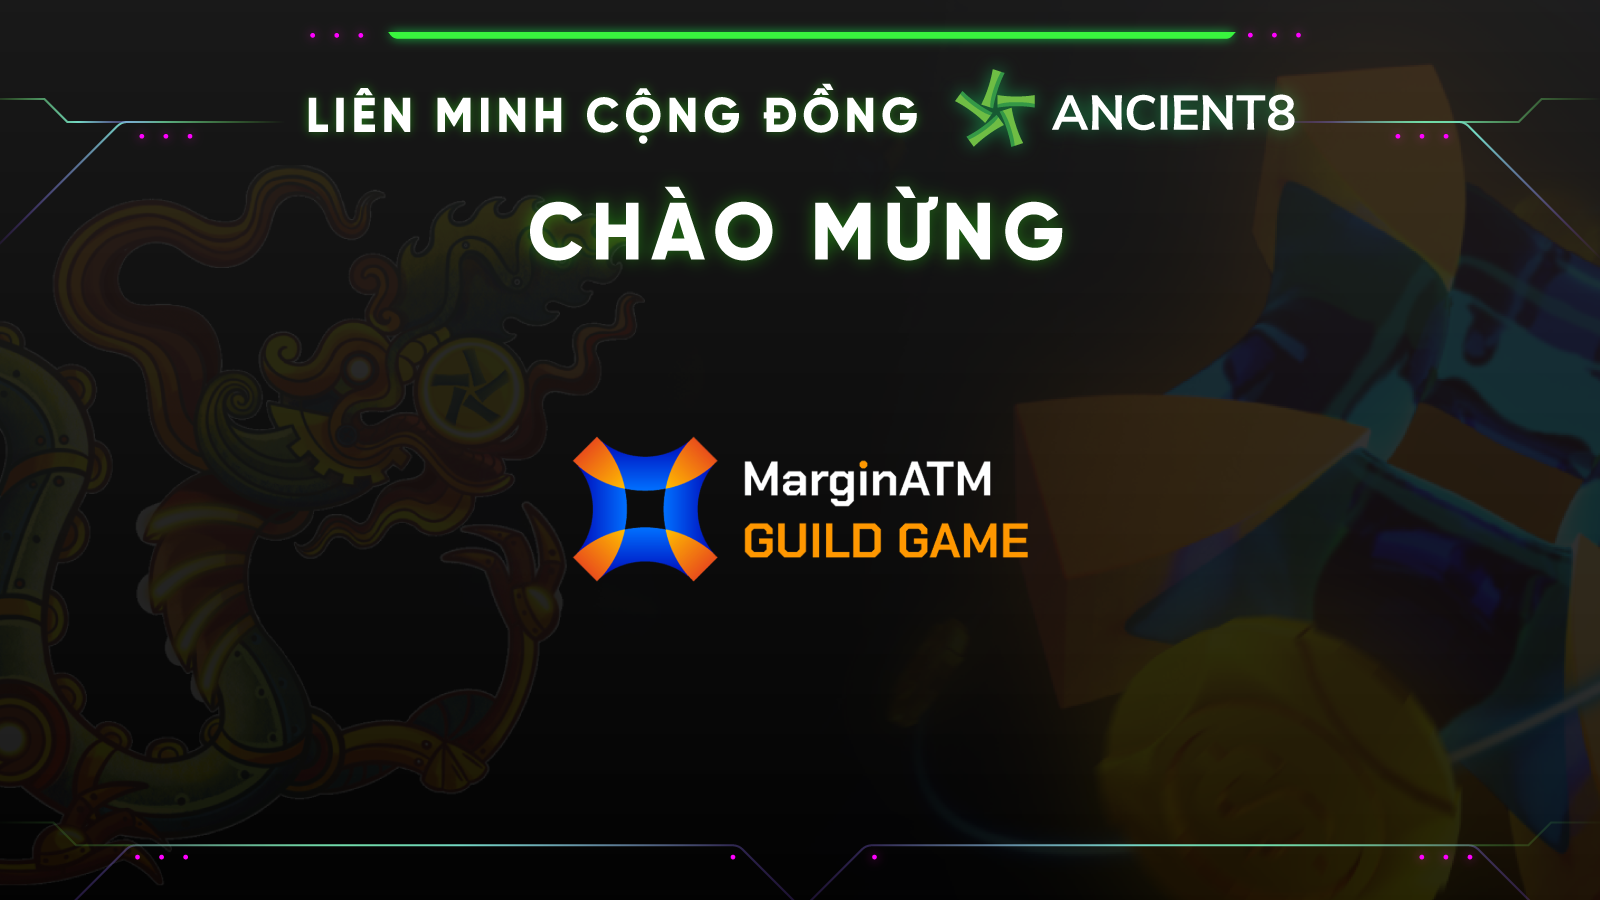 Liên minh Cộng đồng Ancient8 Chào mừng MarginATM Guild Game